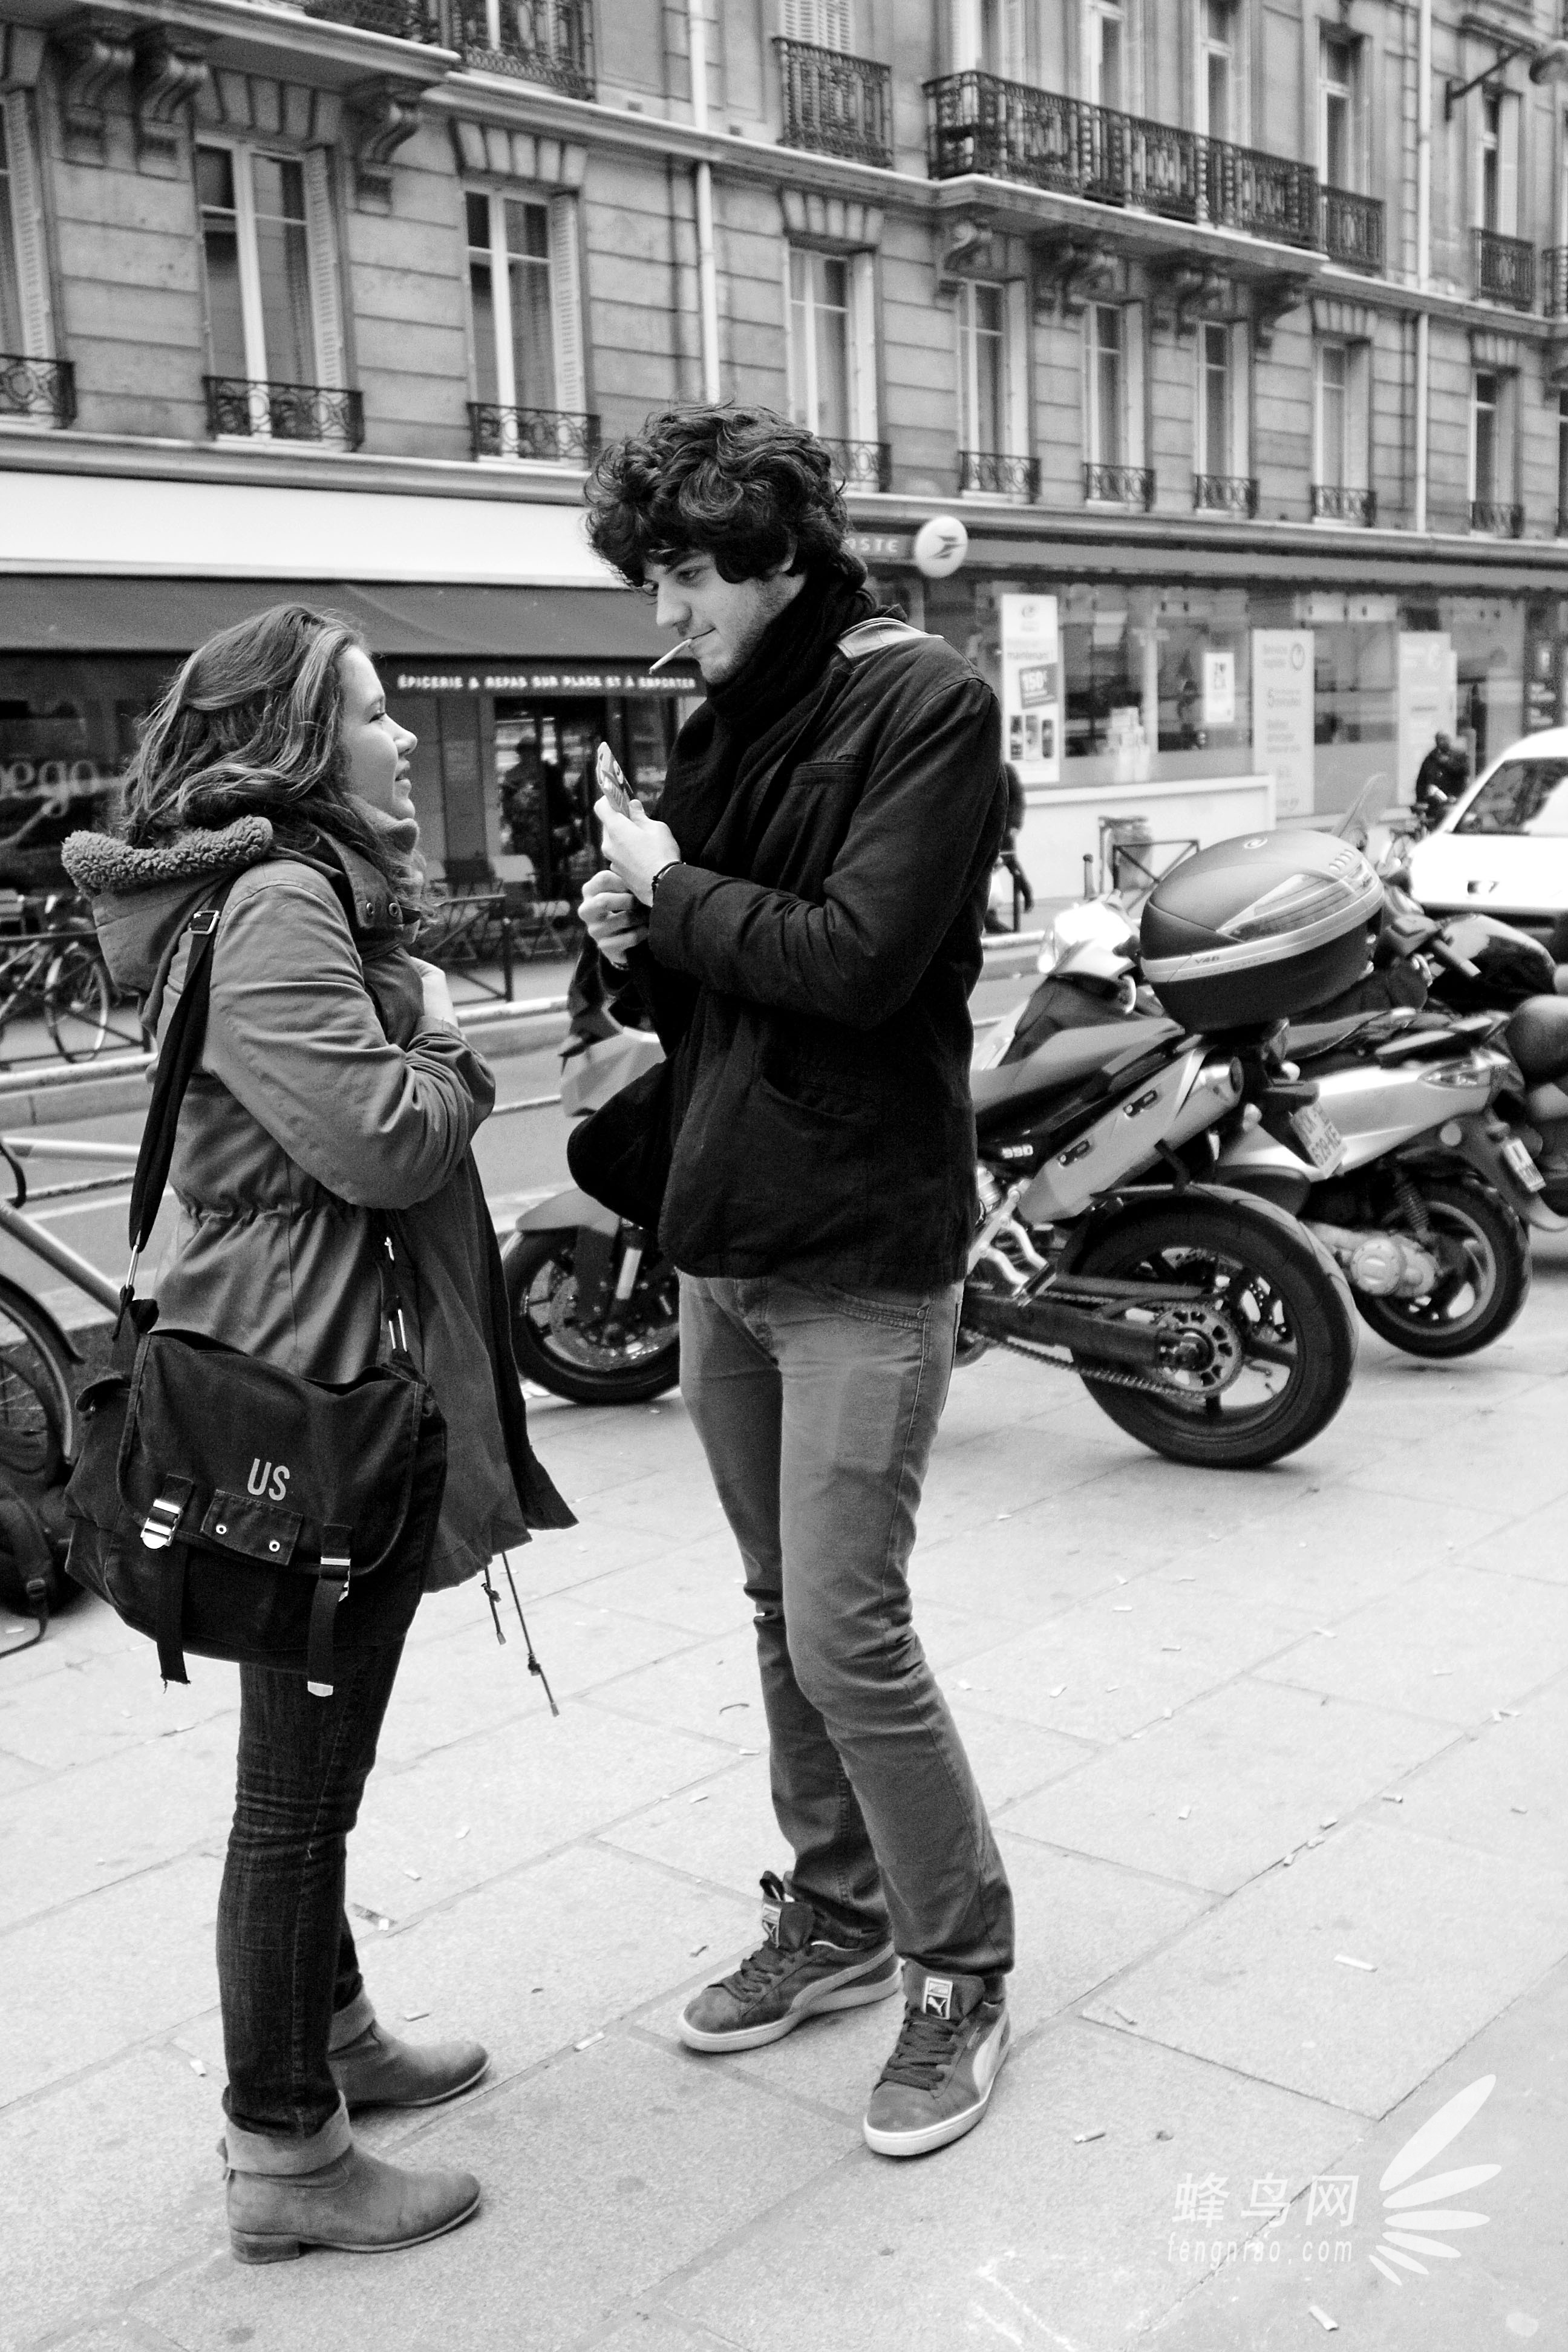 自由与艺术弥漫 摄影师镜头中的巴黎街头